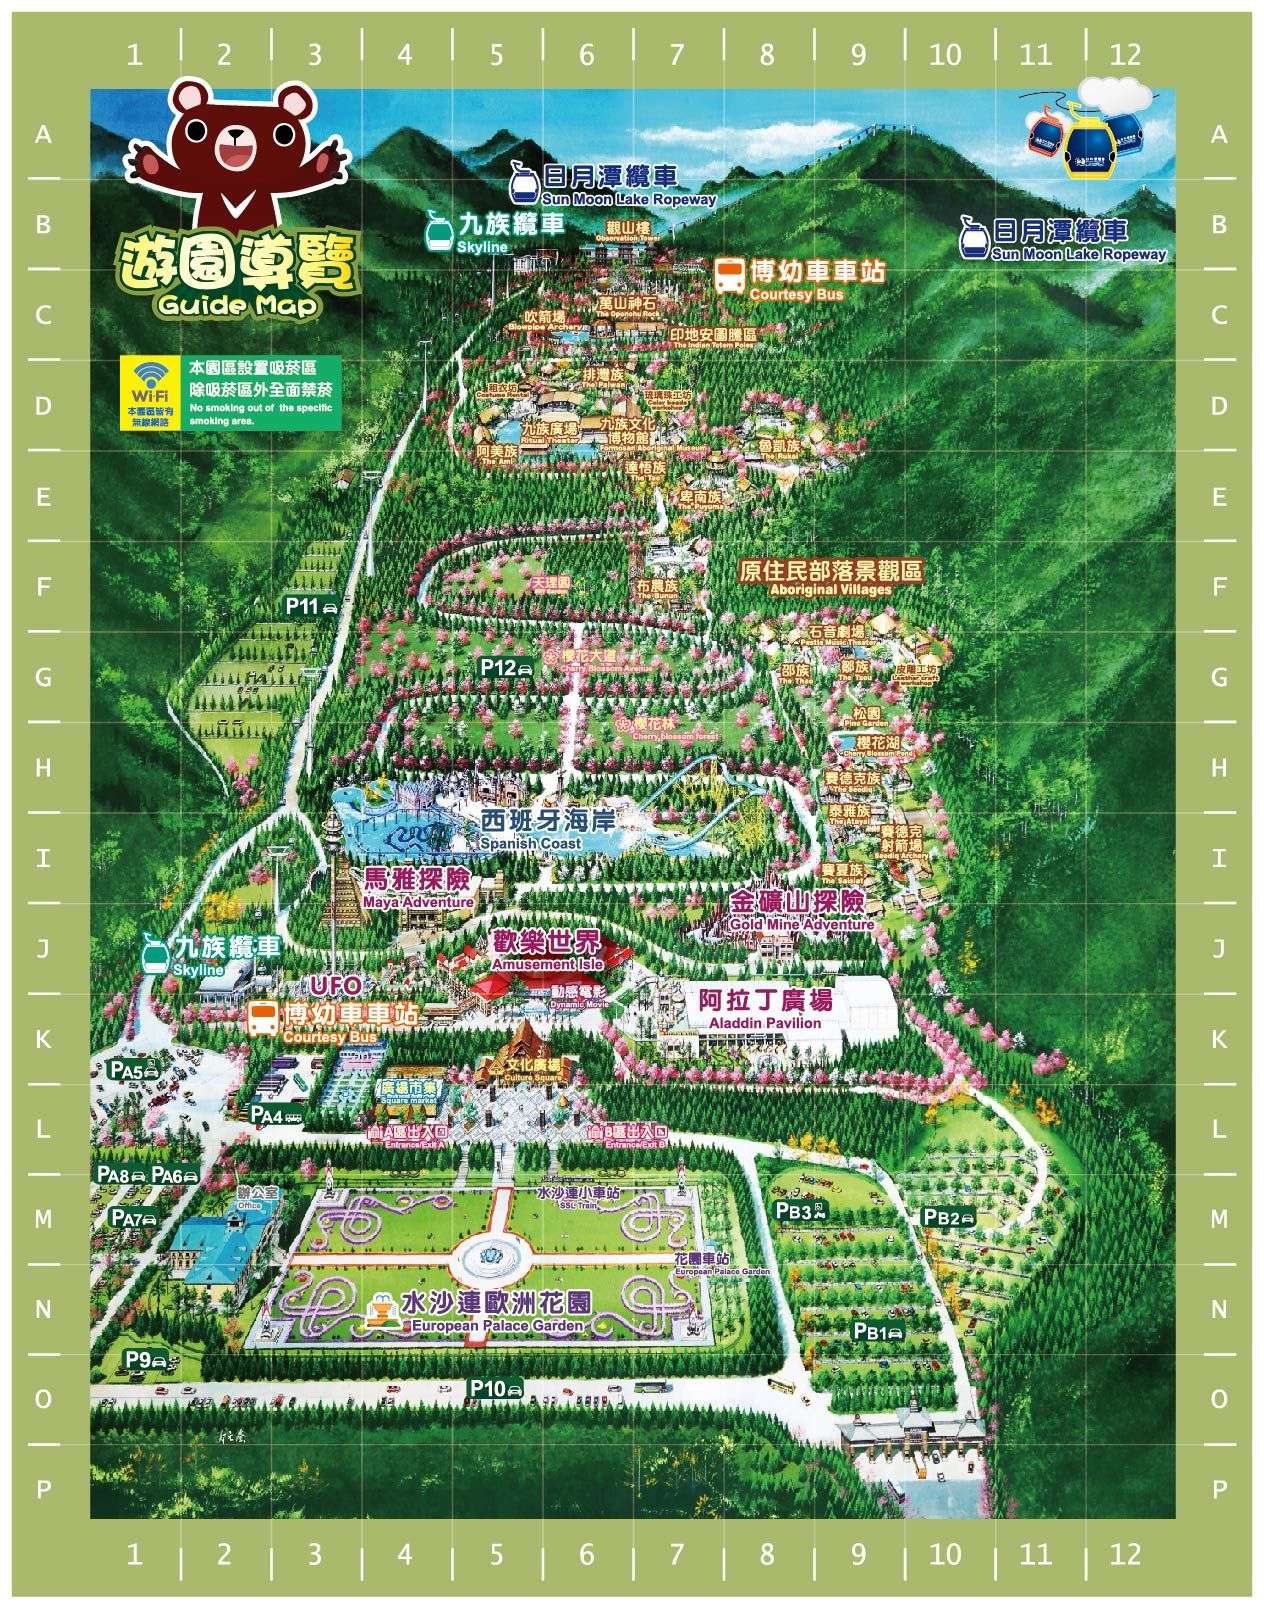 九族文化村 園區導覽地圖